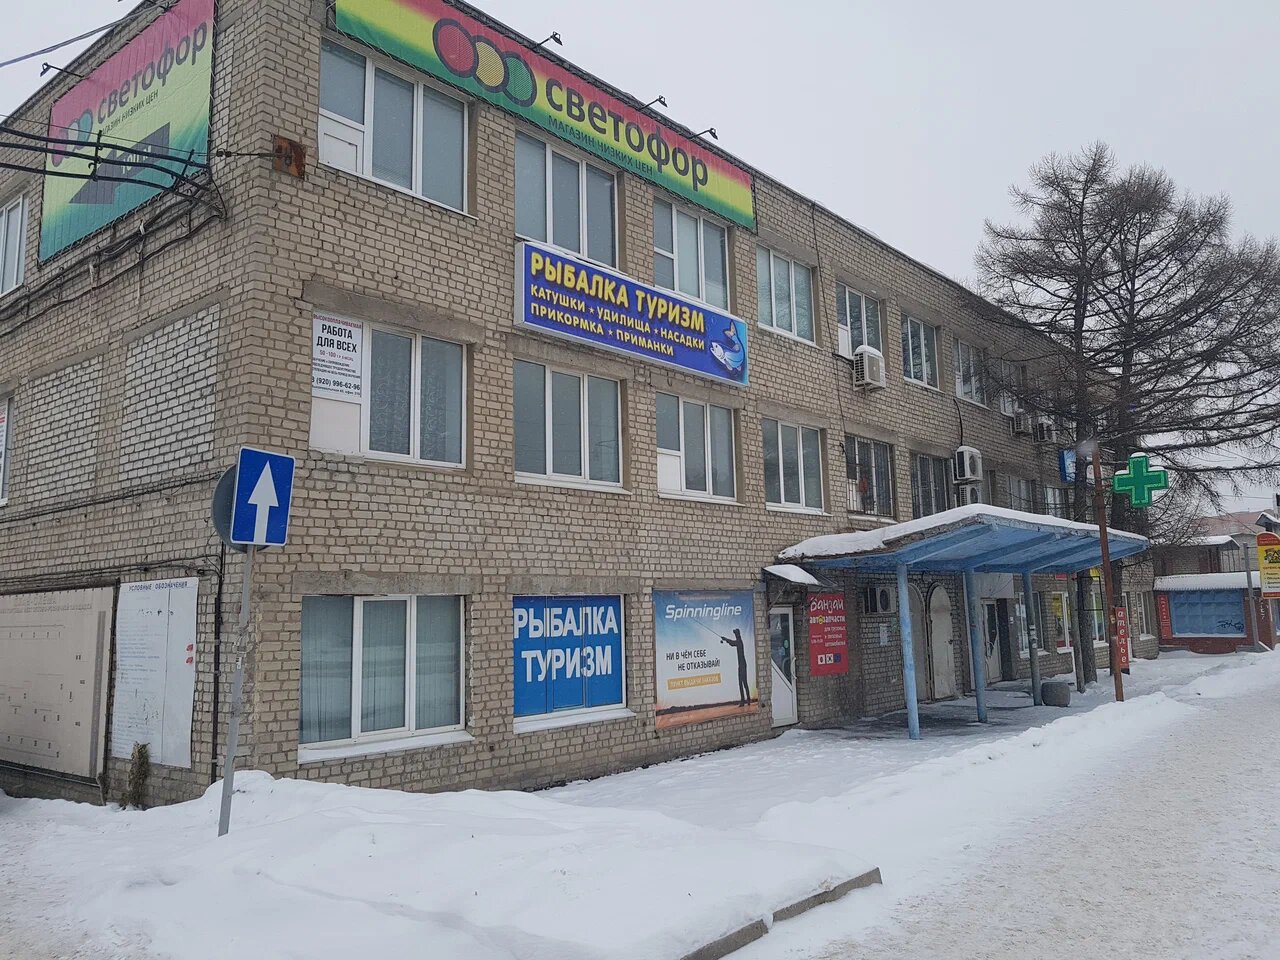 Магазин "Рыбалки и туризм" на Высоковольтной в Рязани